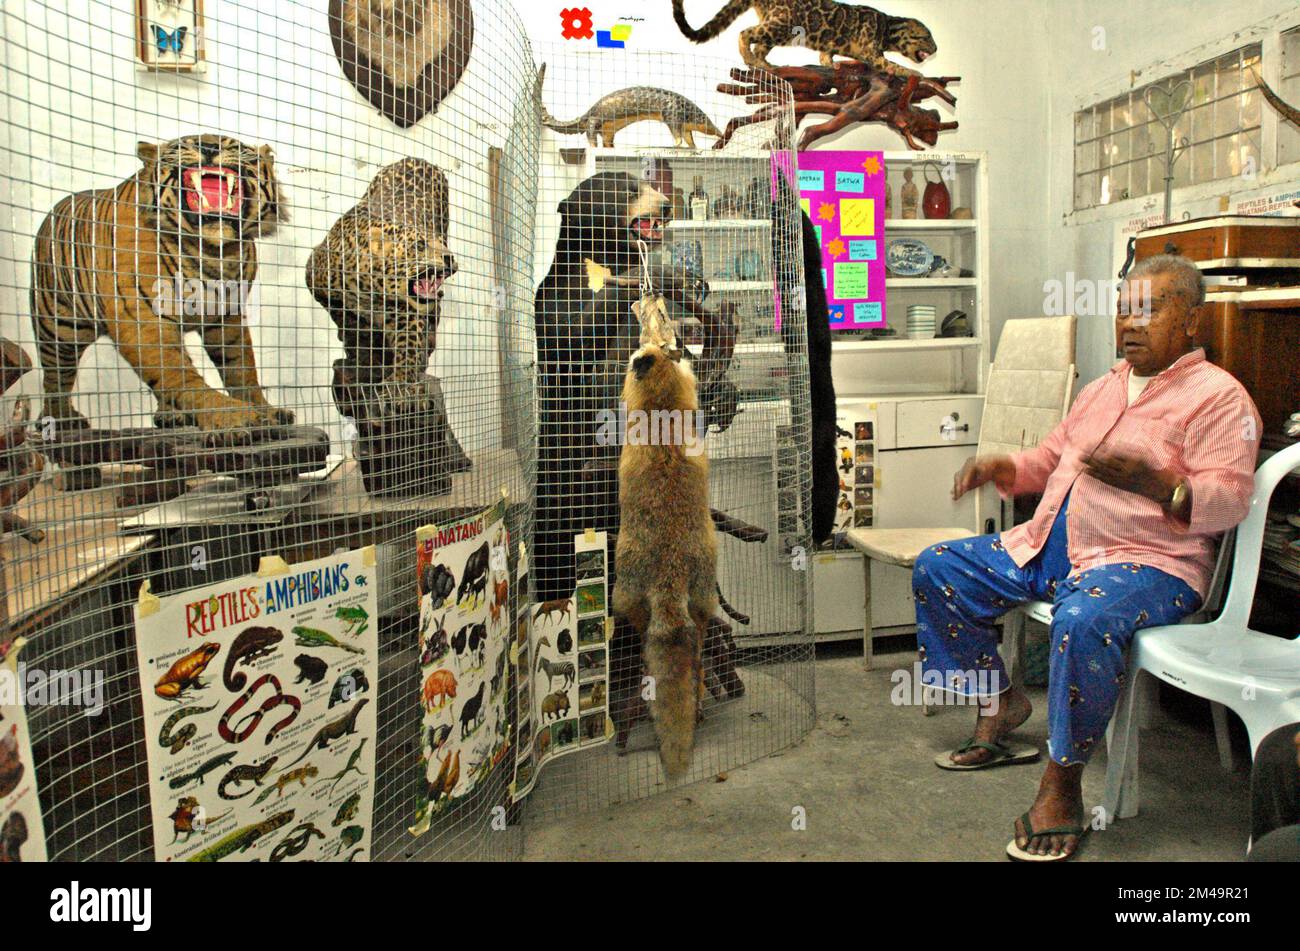 Un uomo viene fotografato con esemplari zoologici che vengono esposti in una stanza fungente da mini museo per bambini, nella sua casa a Gegerkalong, Bandung, Giava Occidentale, Indonesia. La maggior parte degli esemplari sono stati raccolti durante il suo servizio militare. Foto Stock